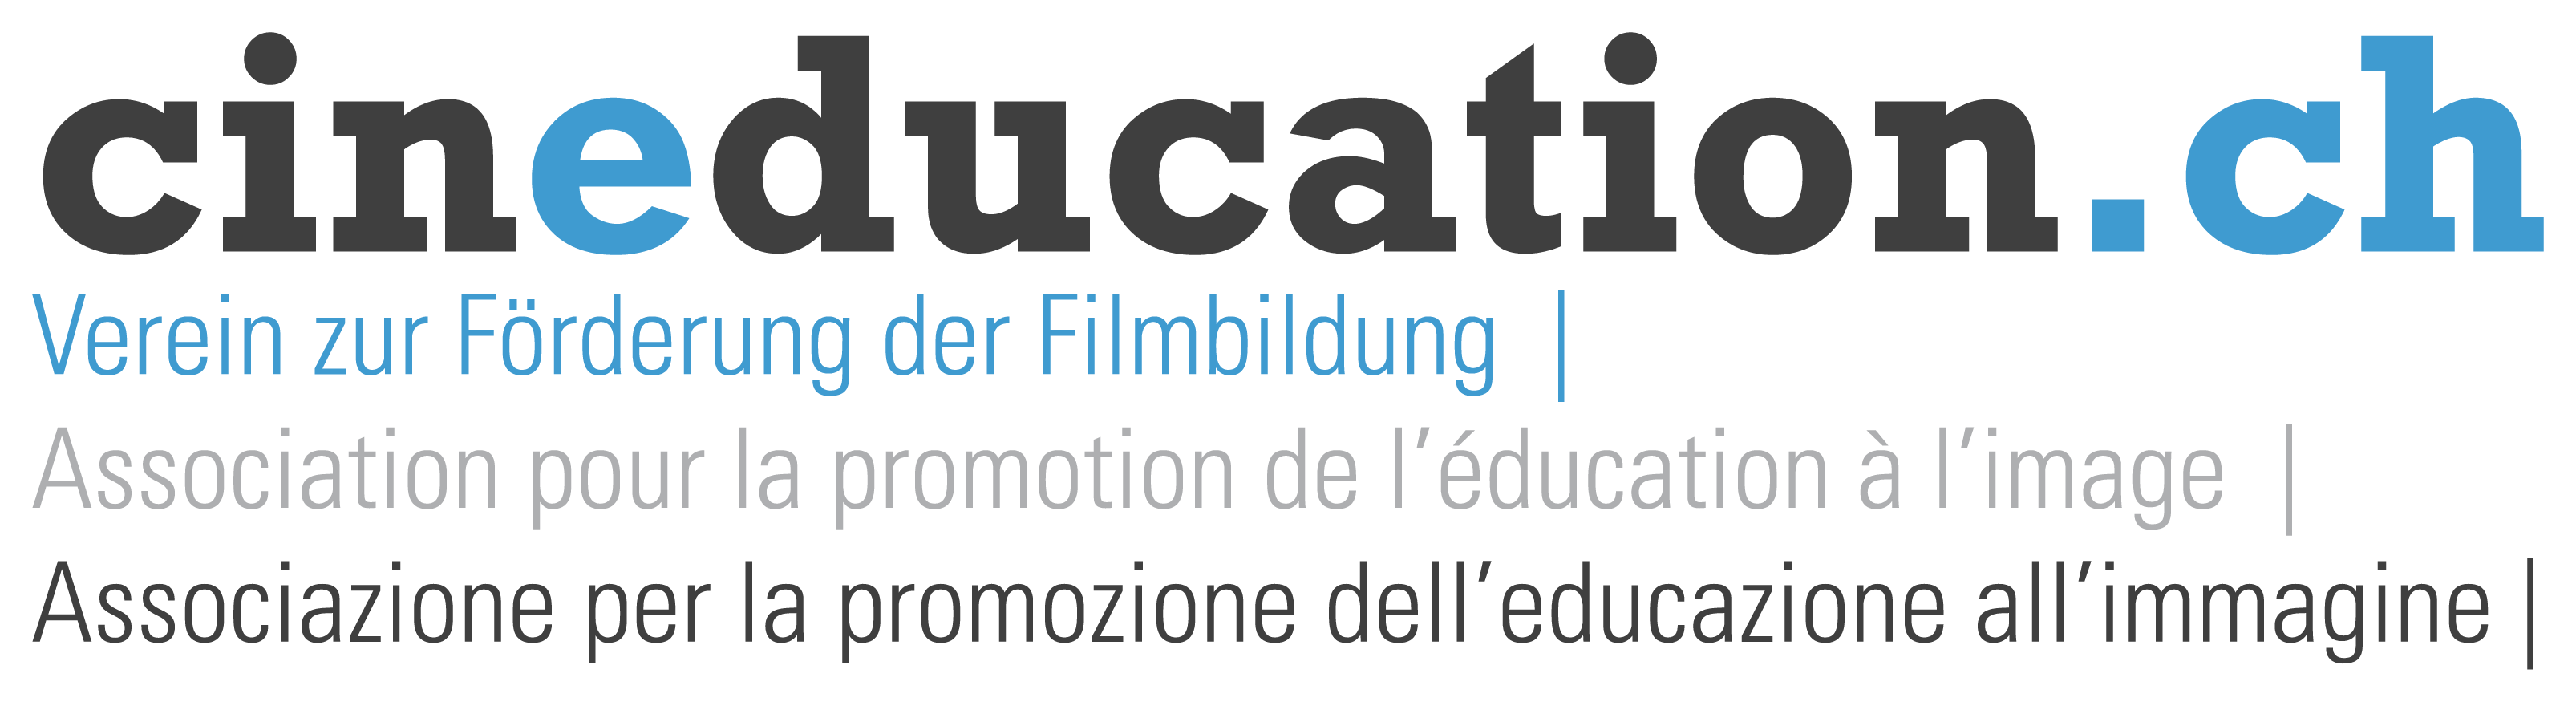 Cineducation / Verein zur Förderung der Filmbildung 